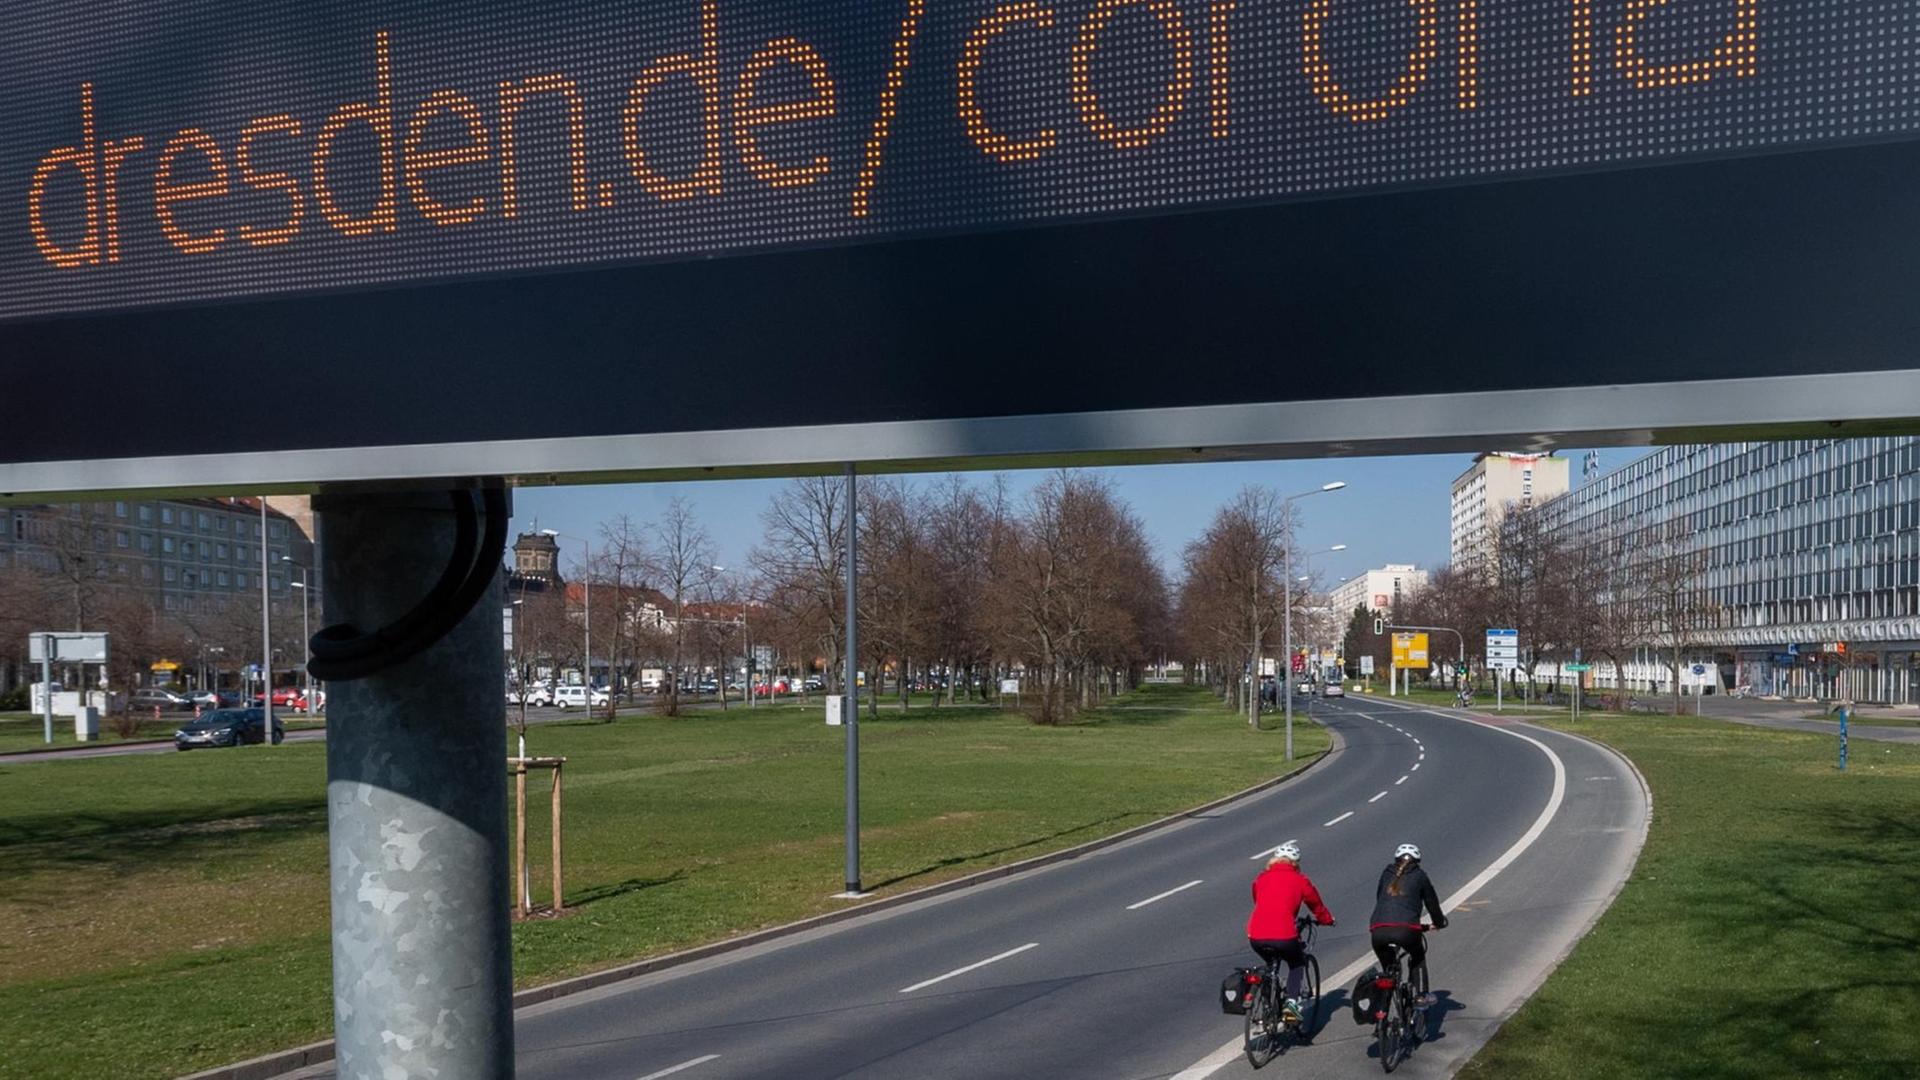 Auf einer digitalen Anzeigetafel in der Dresdner Innenstadt ist "dresden.de/corona" zu lesen während zwei Fahrradfahrerinnen auf dem Radweg vorbei fahrenung weltweit